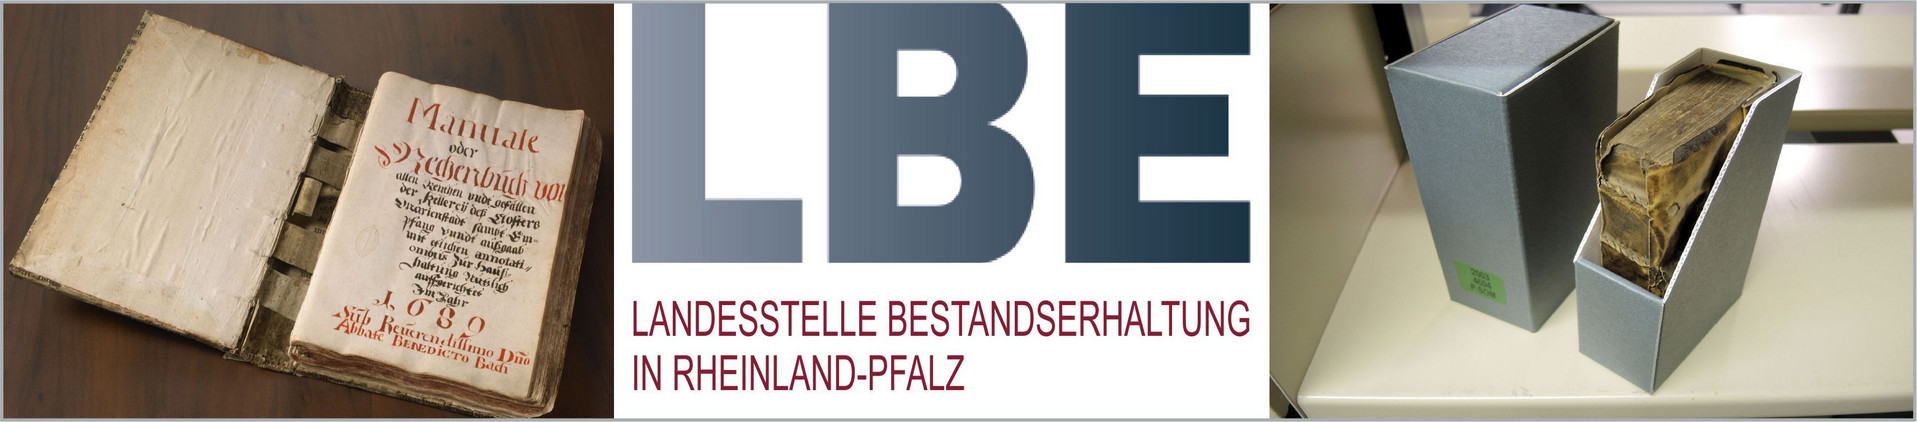 Fotomontage von alten Texten und dem Logo der LBE